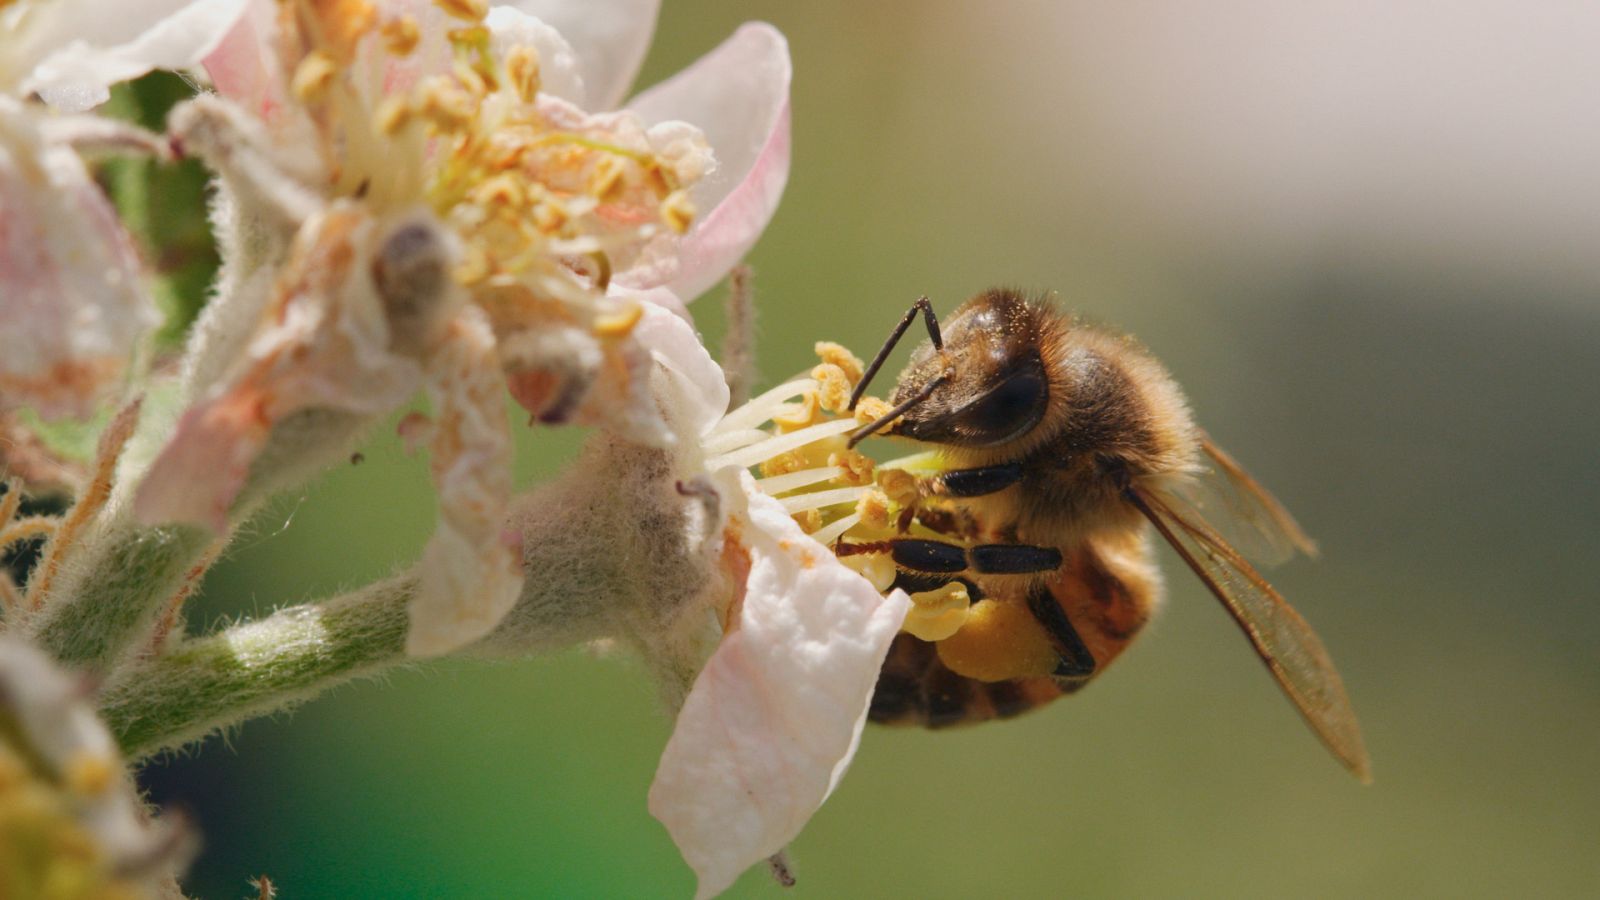 Somos documentales - Diario de una abeja - Documental en RTVE